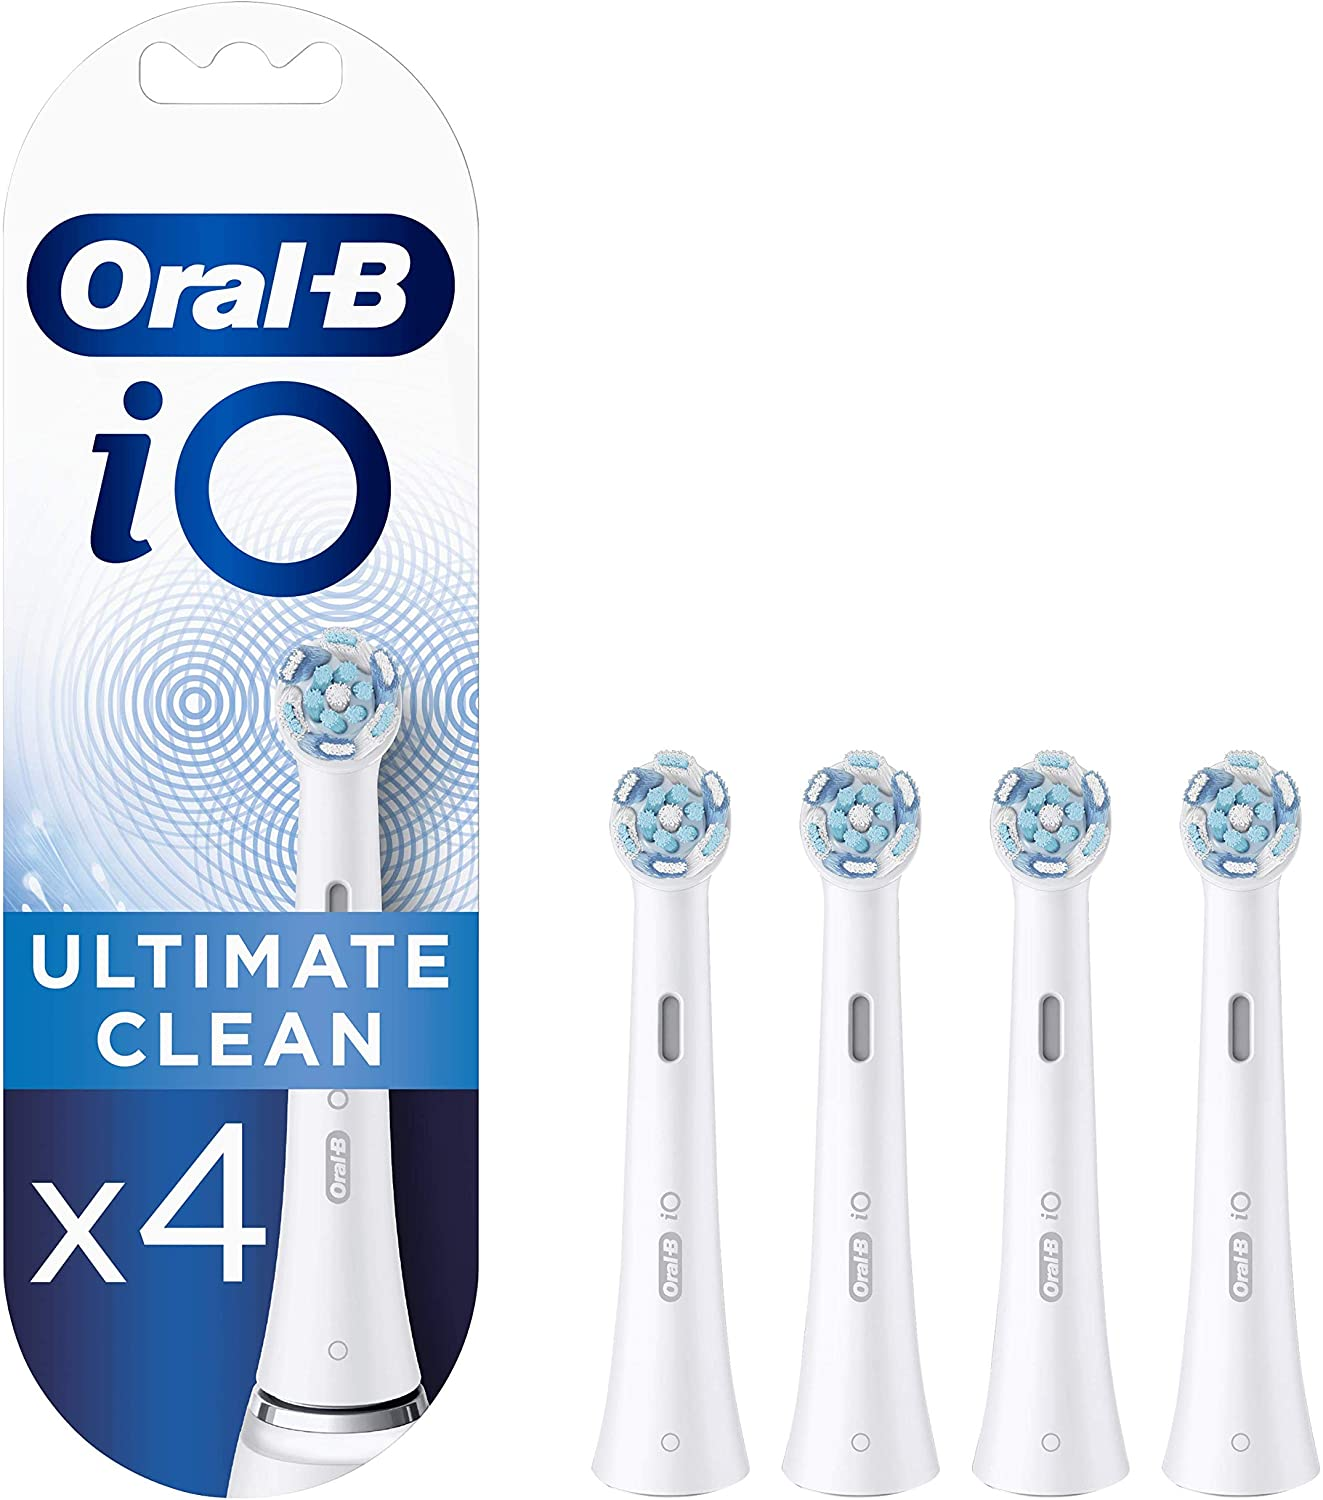 Oralb Io Ultimate clean recambios cepillo dientes pack 4 cabezales blanco originales x para